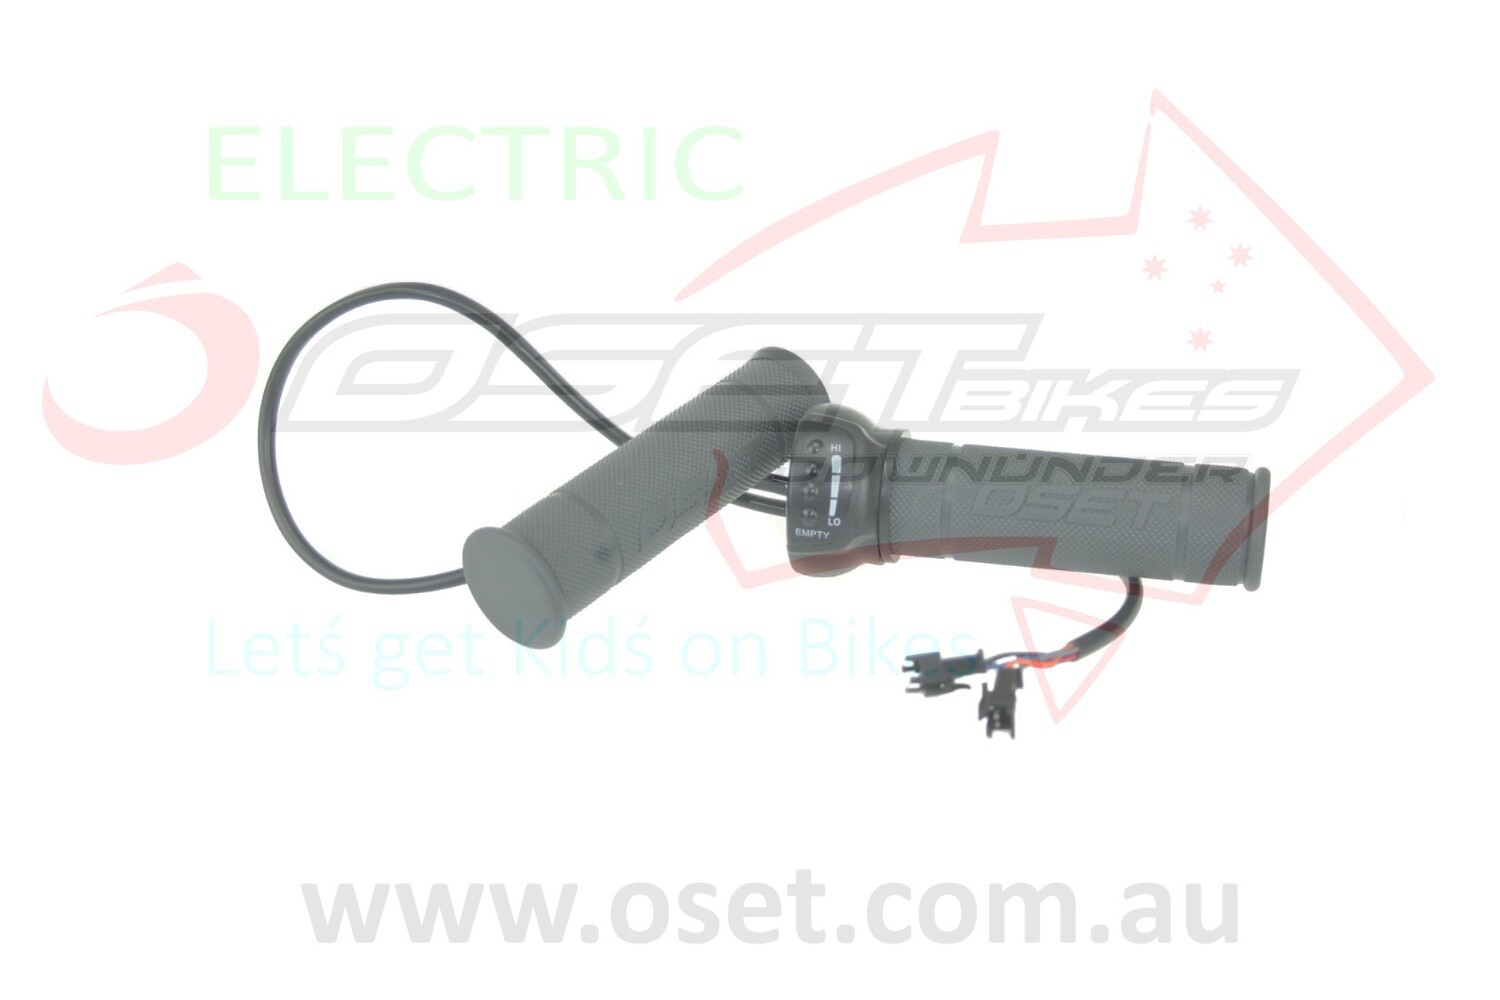 Throttle OSET20E (2013 ONLY) - 48v Thin Short Grey Grips